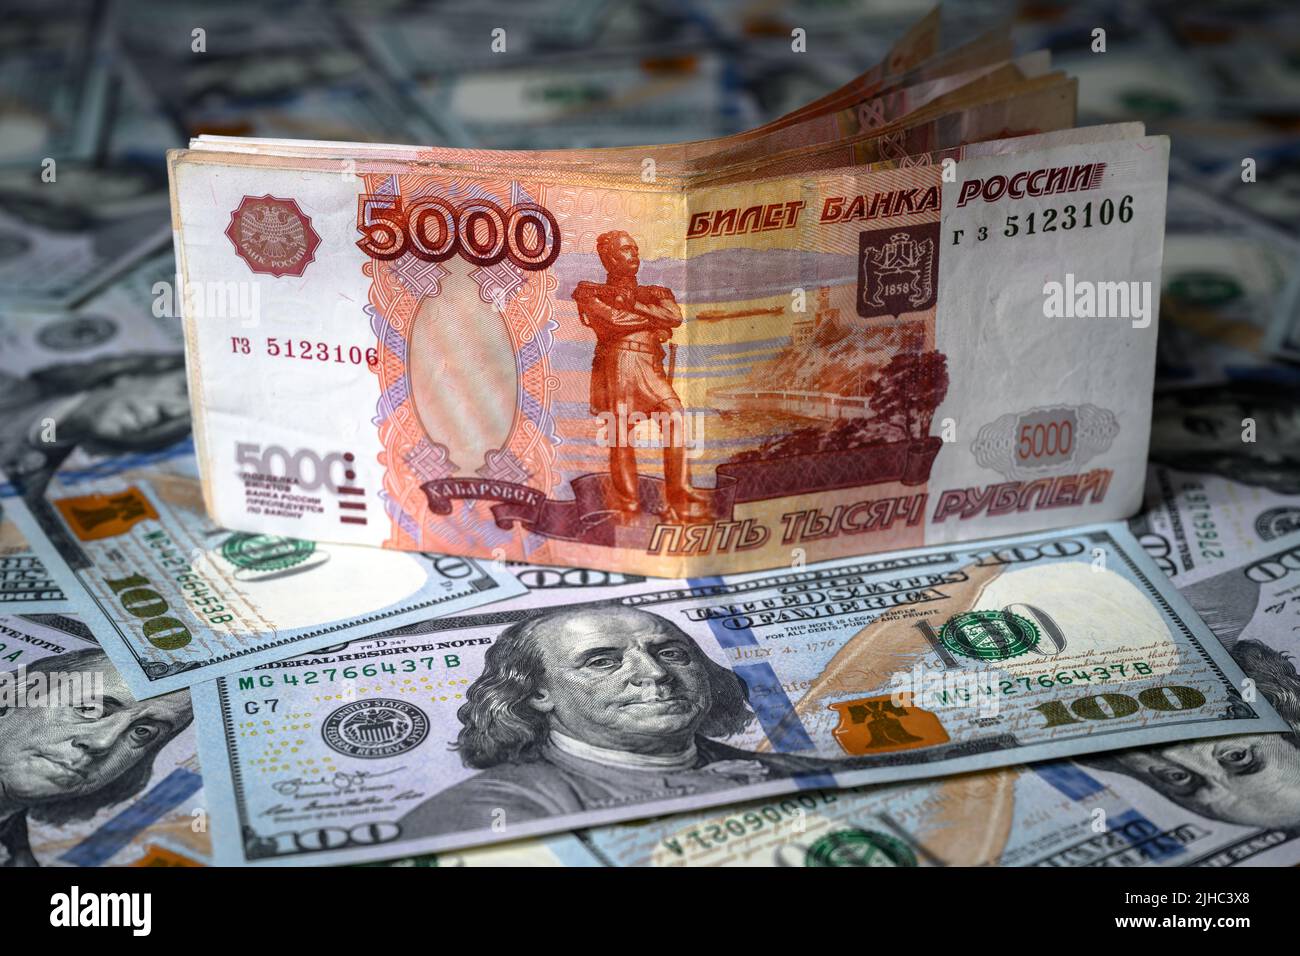 Russischer Rubel im Vergleich zum US-Dollar steht der Rubel auf dem Stapel der Dollarscheine. Konzept der Sanktionen, der Währung, des Sieges des Rubels, der Wirtschaft Russlands a Stockfoto